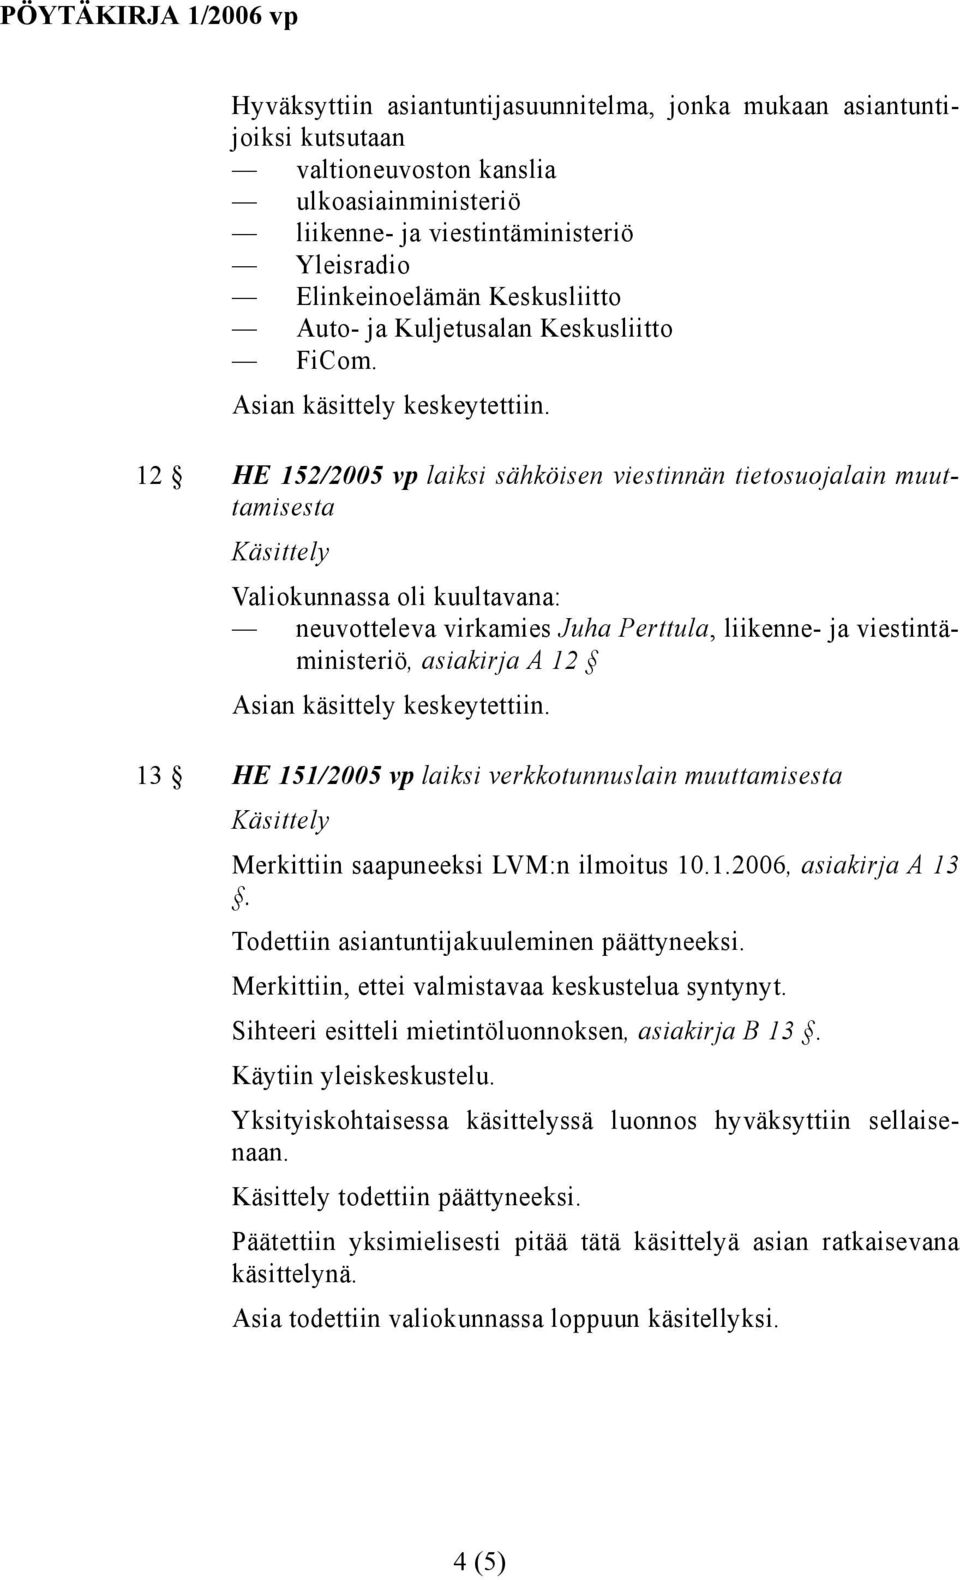 12 HE 152/2005 vp laiksi sähköisen viestinnän tietosuojalain muuttamisesta Valiokunnassa oli kuultavana: neuvotteleva virkamies Juha Perttula, liikenne- ja viestintäministeriö, asiakirja A 12 13 HE